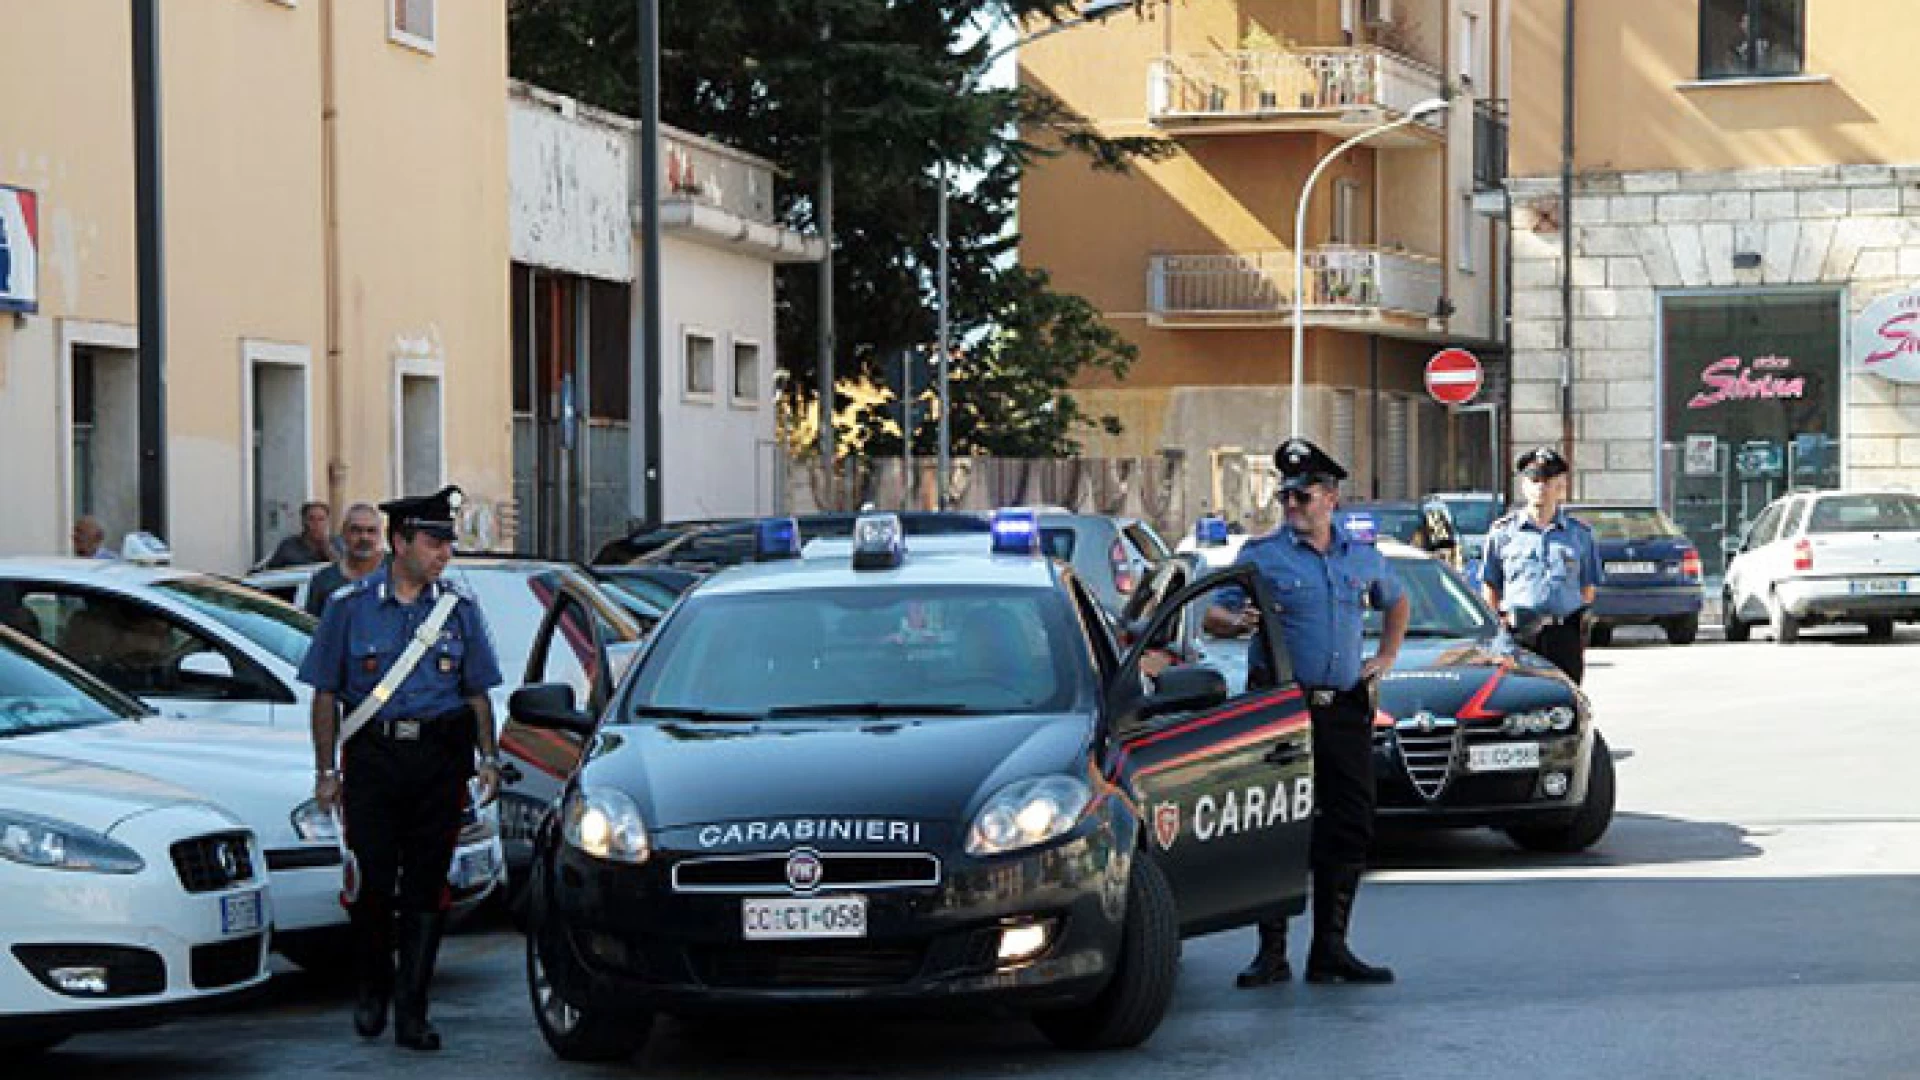 Isernia: Weekend sicuro, controlli dei Carabinieri in tutto il territorio della provincia, scattano denunce e sequestri.